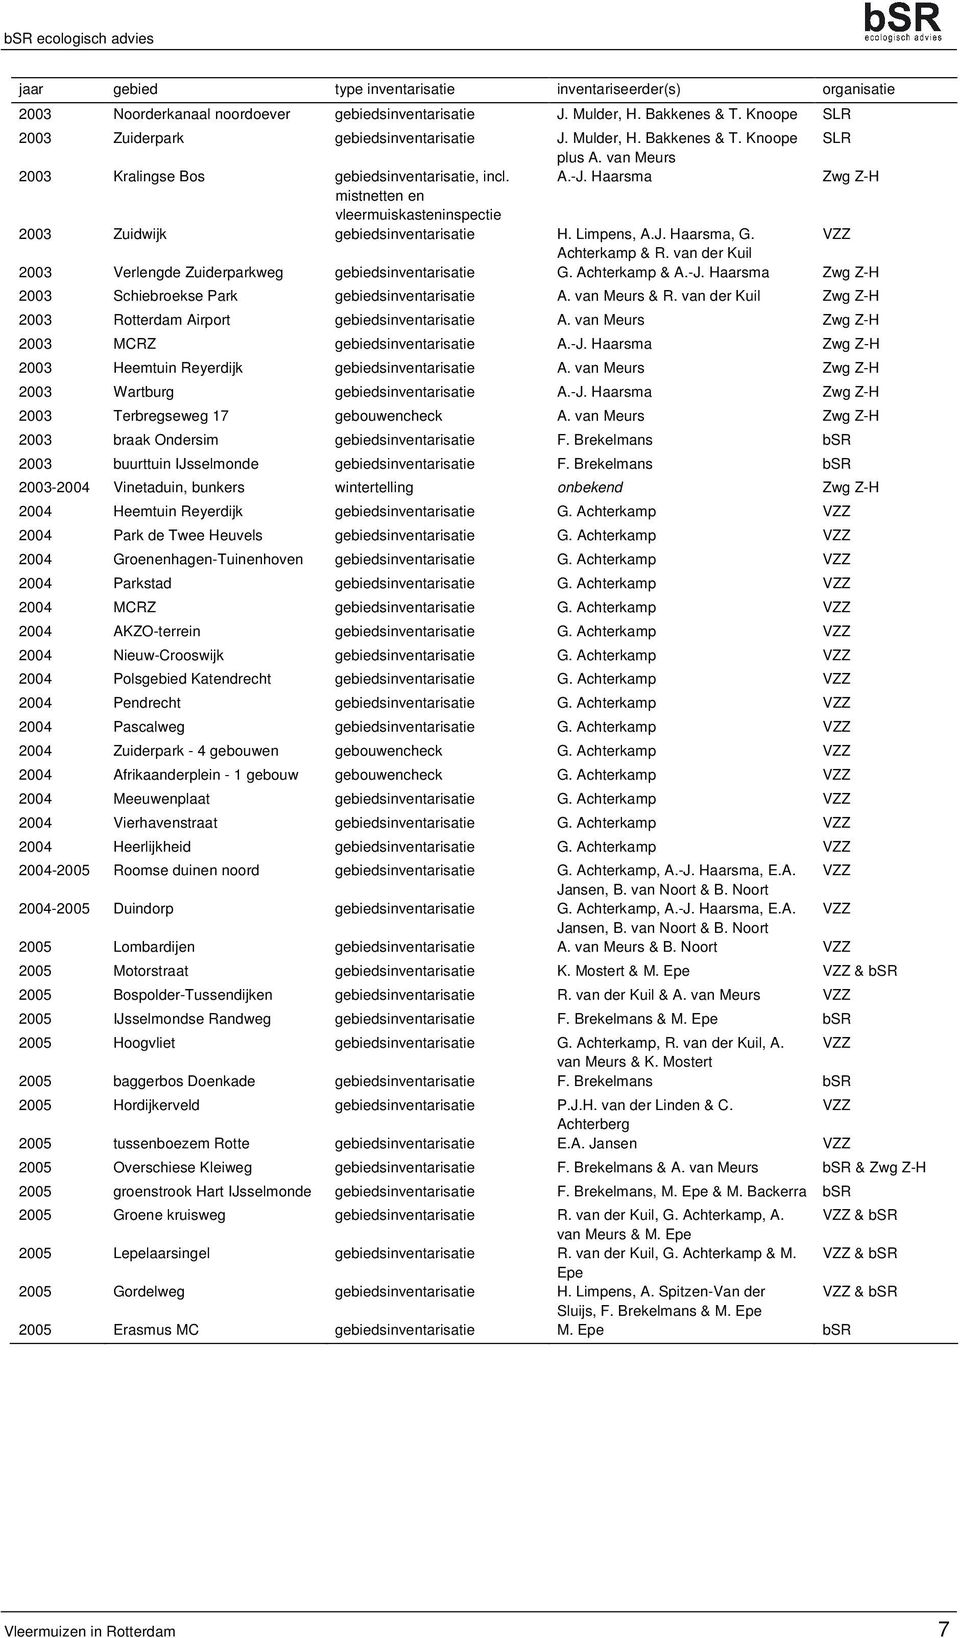 Haarsma Zwg Z-H mistnetten en vleermuiskasteninspectie 2003 Zuidwijk gebiedsinventarisatie H. Limpens, A.J. Haarsma, G. VZZ Achterkamp & R.